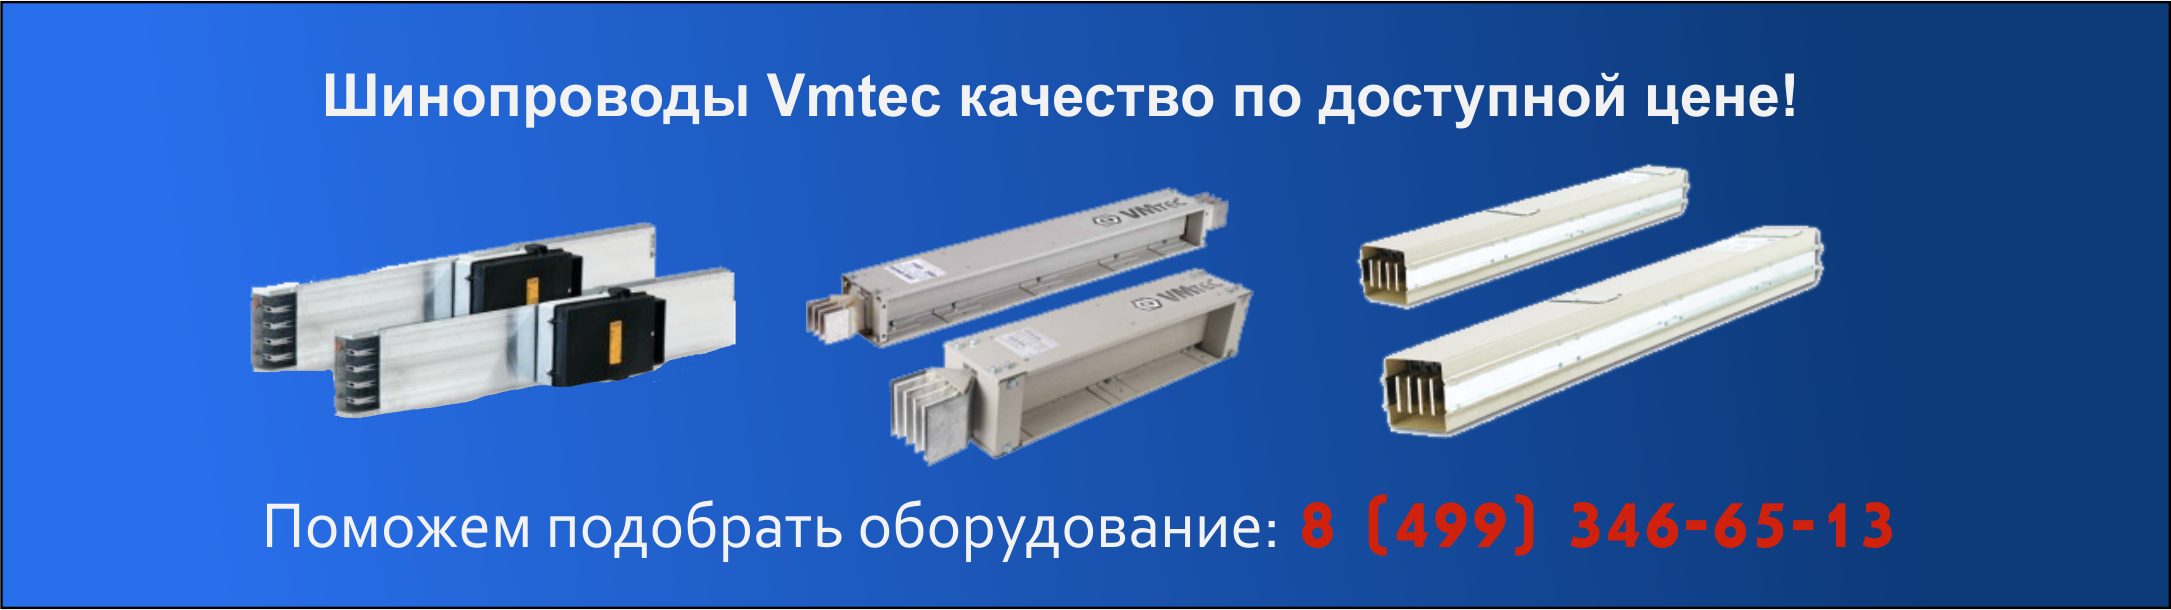 shinoprovodi-marki-VMtec-proizvoditel